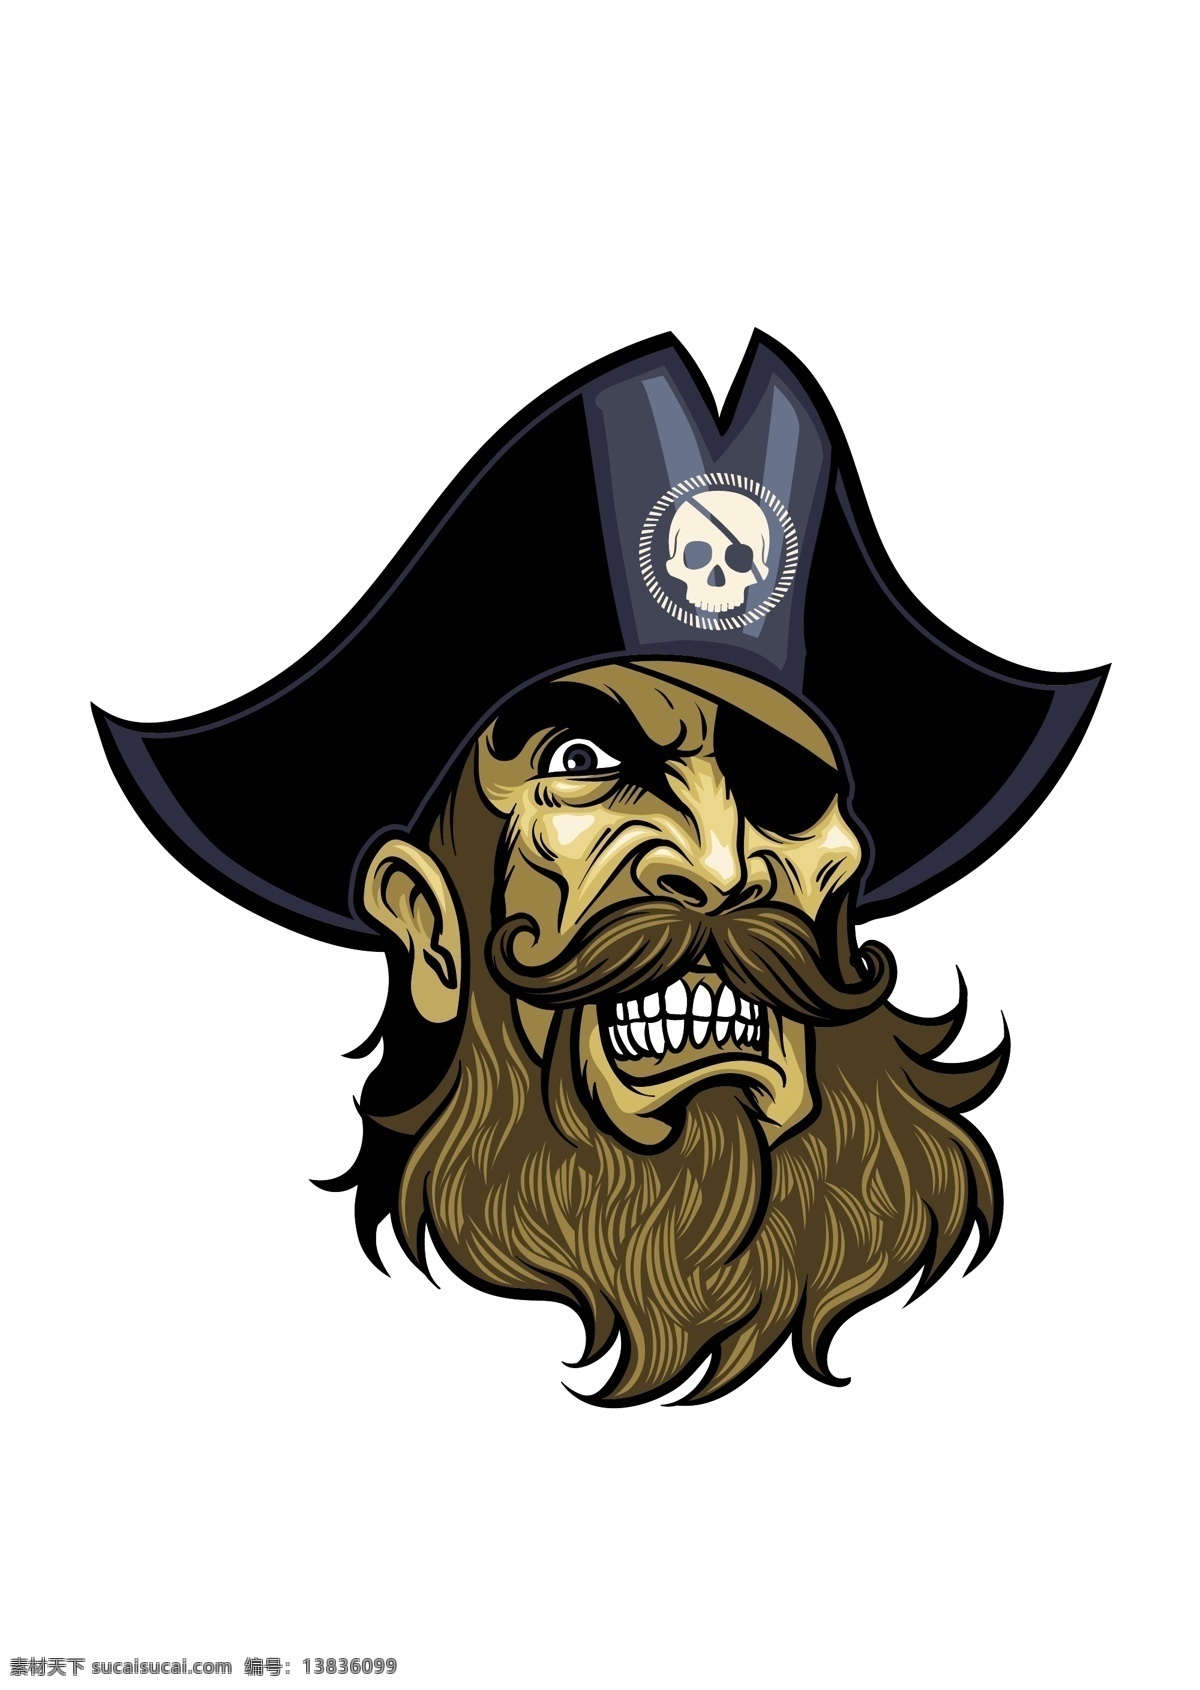 骷髅海盗 骷髅头 头颅 创意 灵异图案 头像 海盗 其他设计 矢量